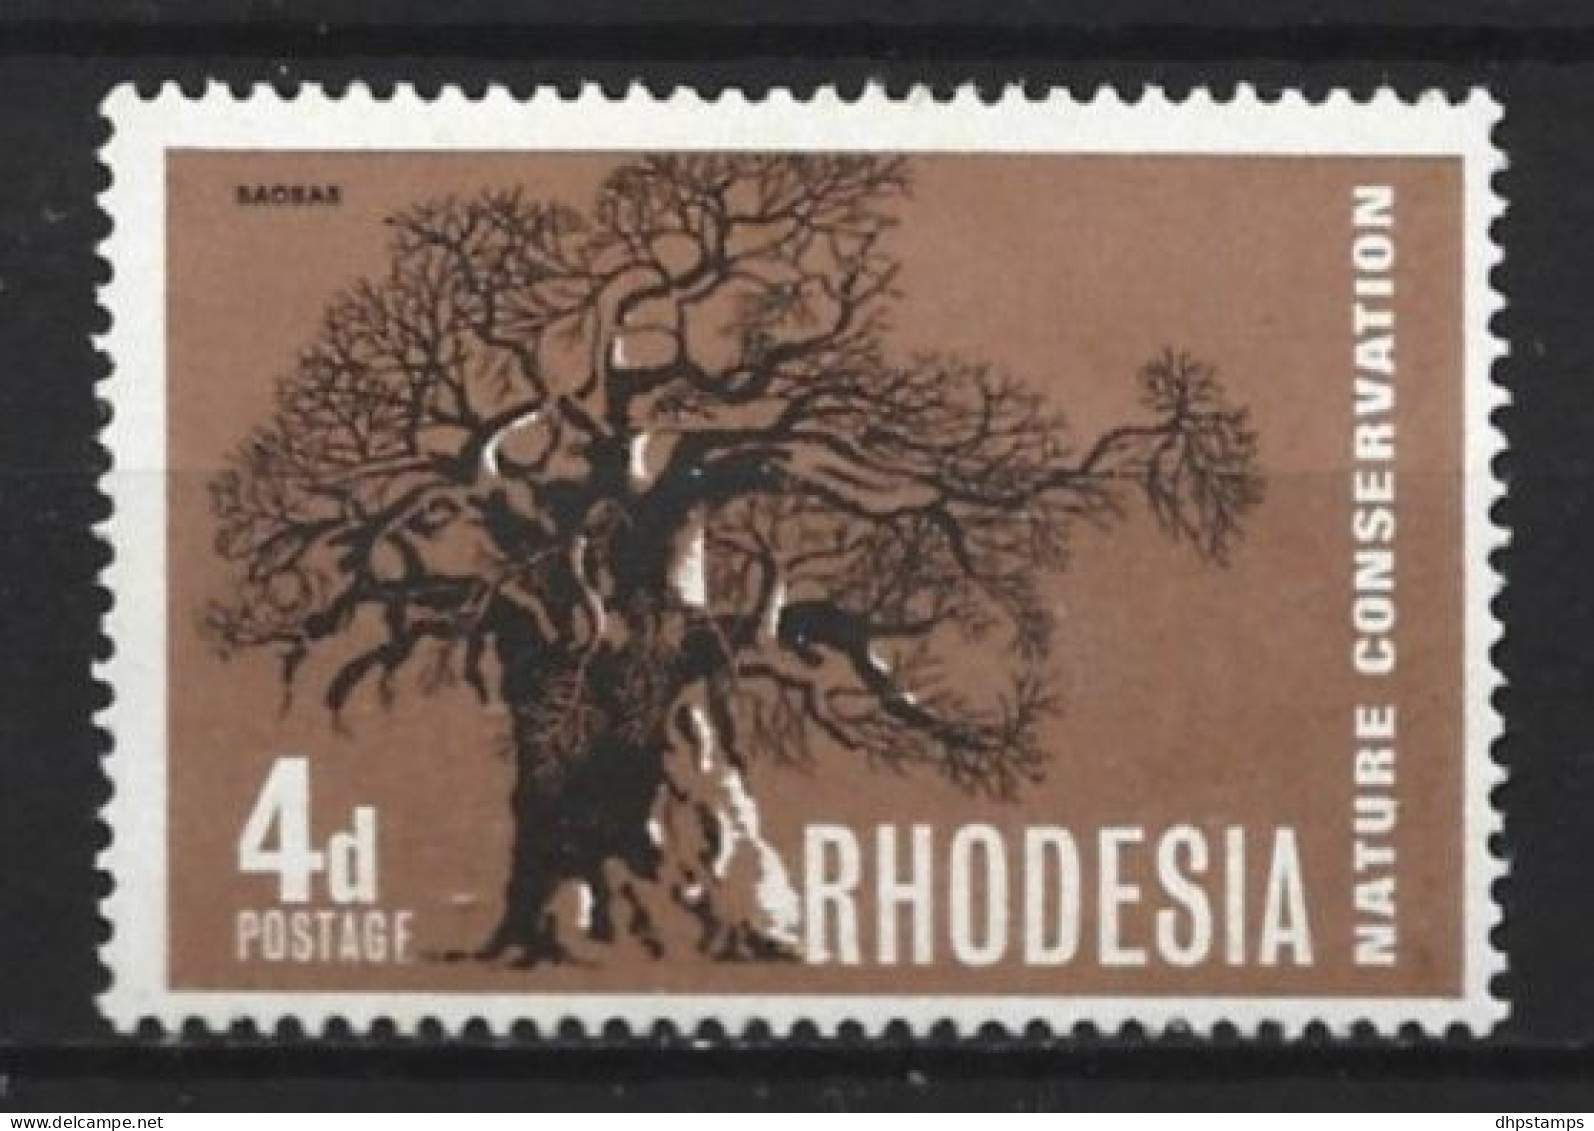 Rhodesia 1967 Tree  Y.T.  158 (0) - Rhodesië (1964-1980)